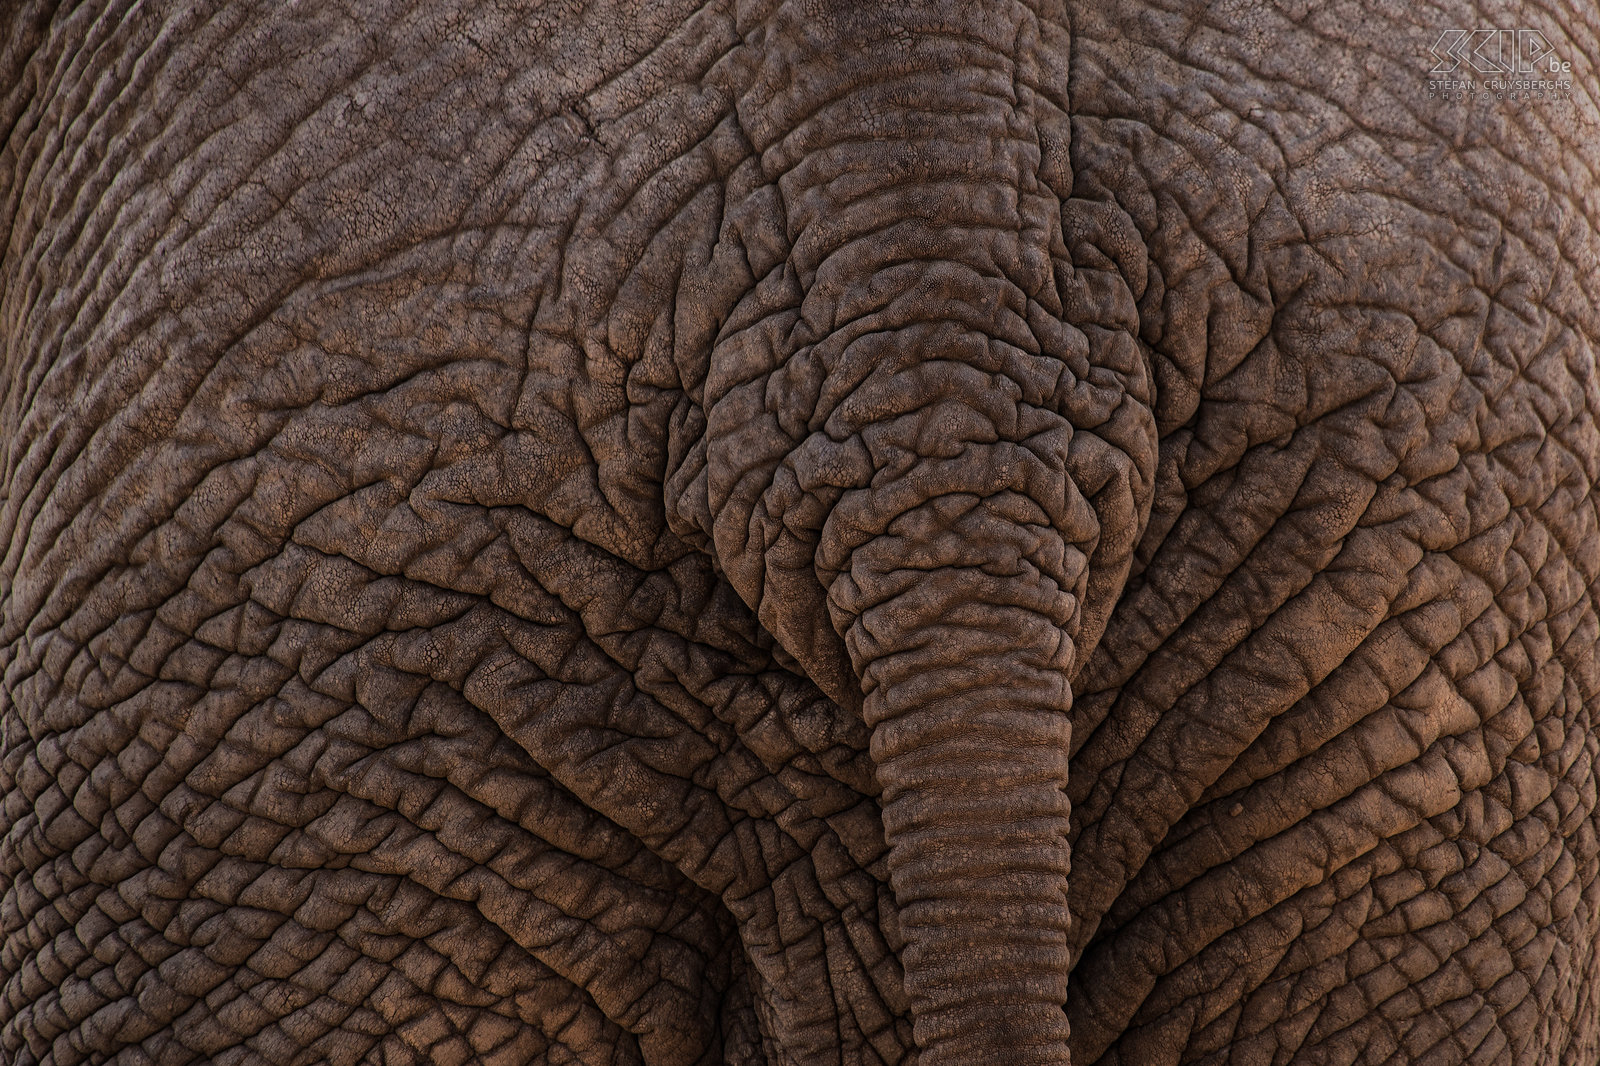 Samburu - Olifantenhuid Close-up van de olifantenhuid en staart. Stefan Cruysberghs